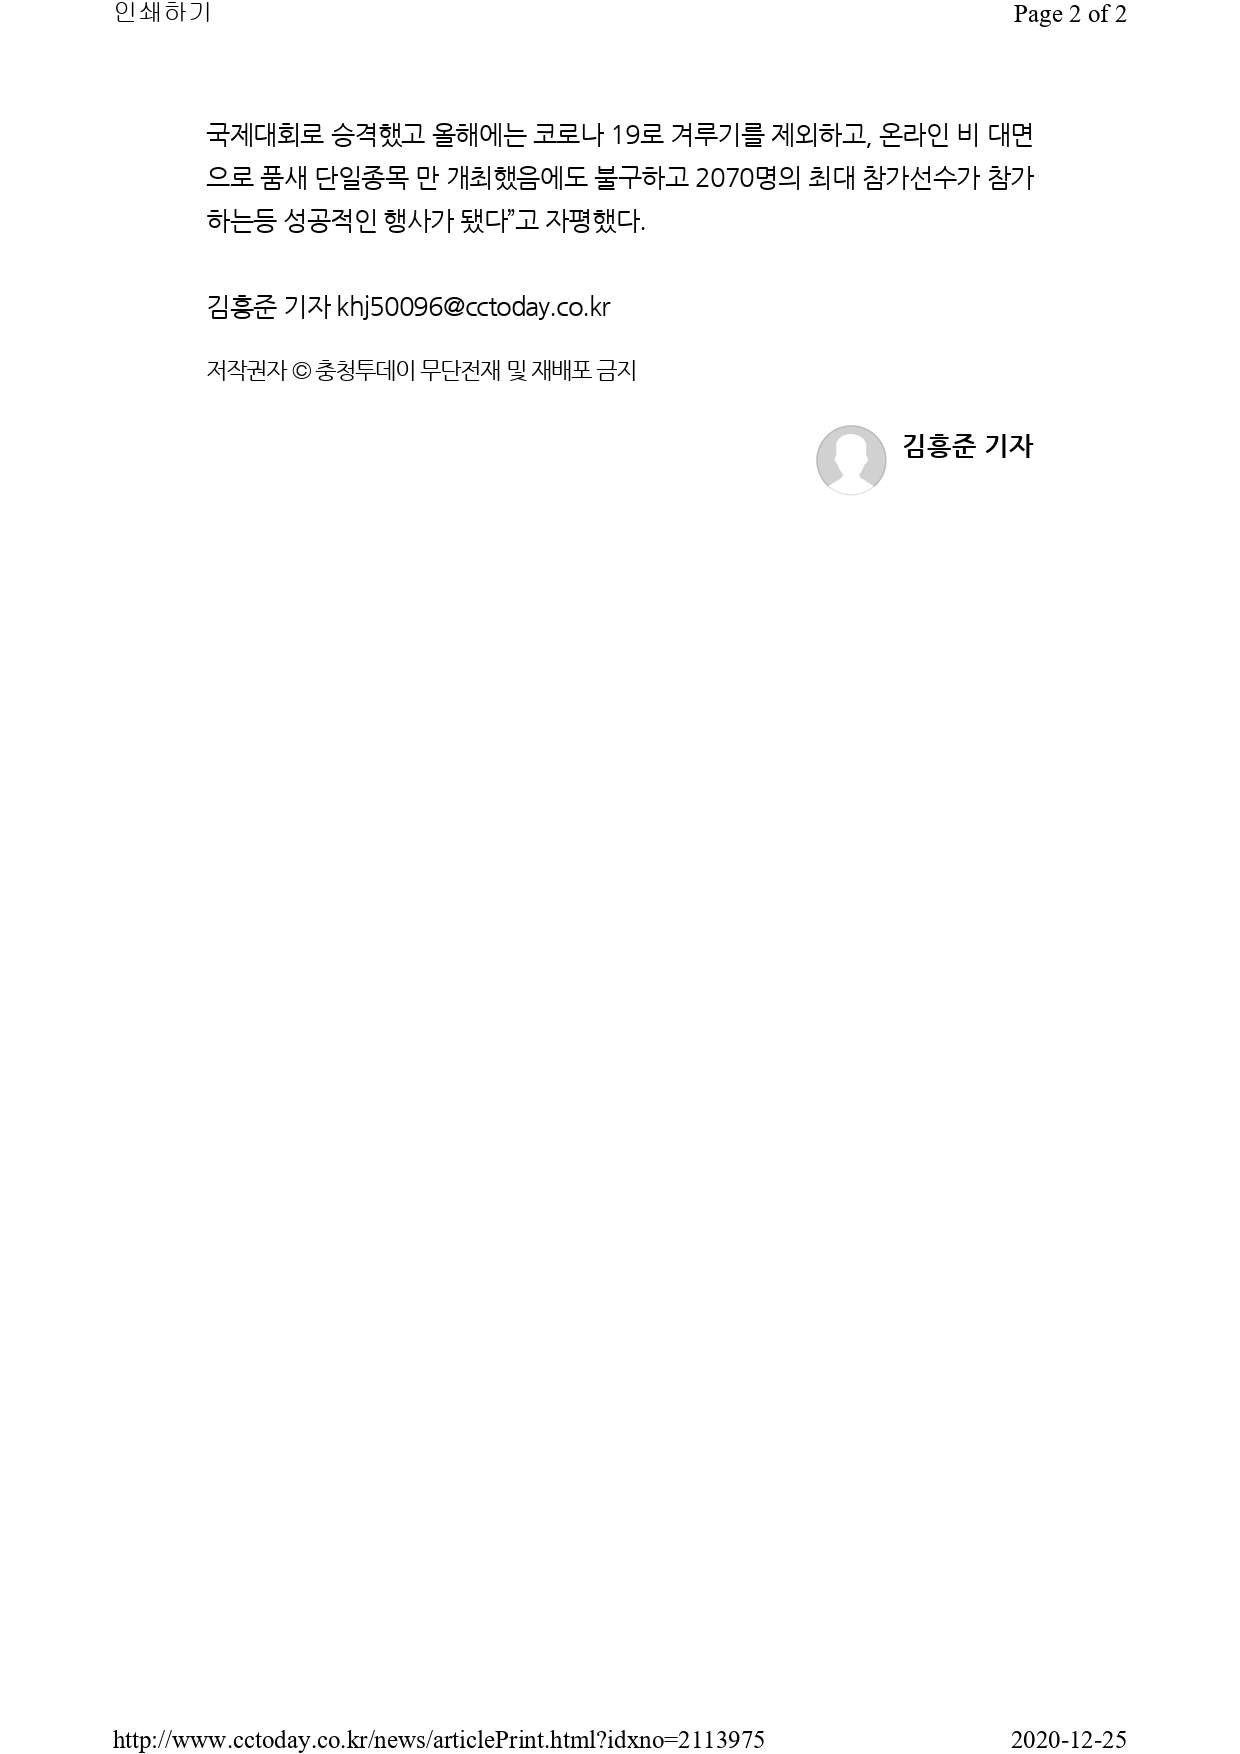 [충청투데이] 온라인 2020 대전MBC배 국제오픈태권도대회 성료!_page-0002.jpg